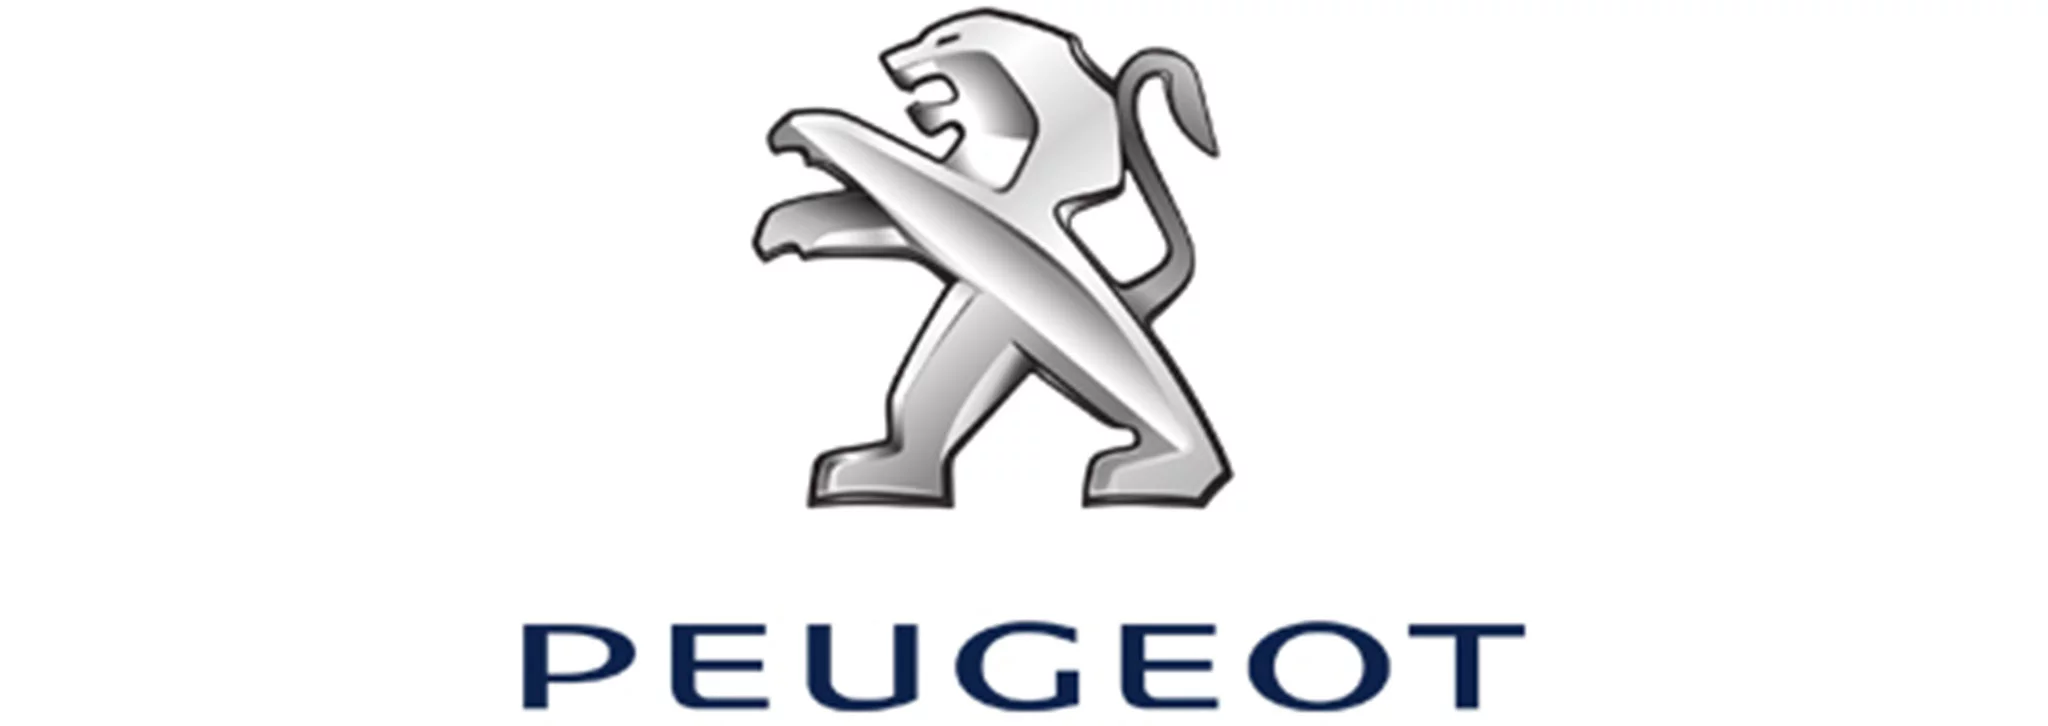 Logo Peugeot - Dénia.com